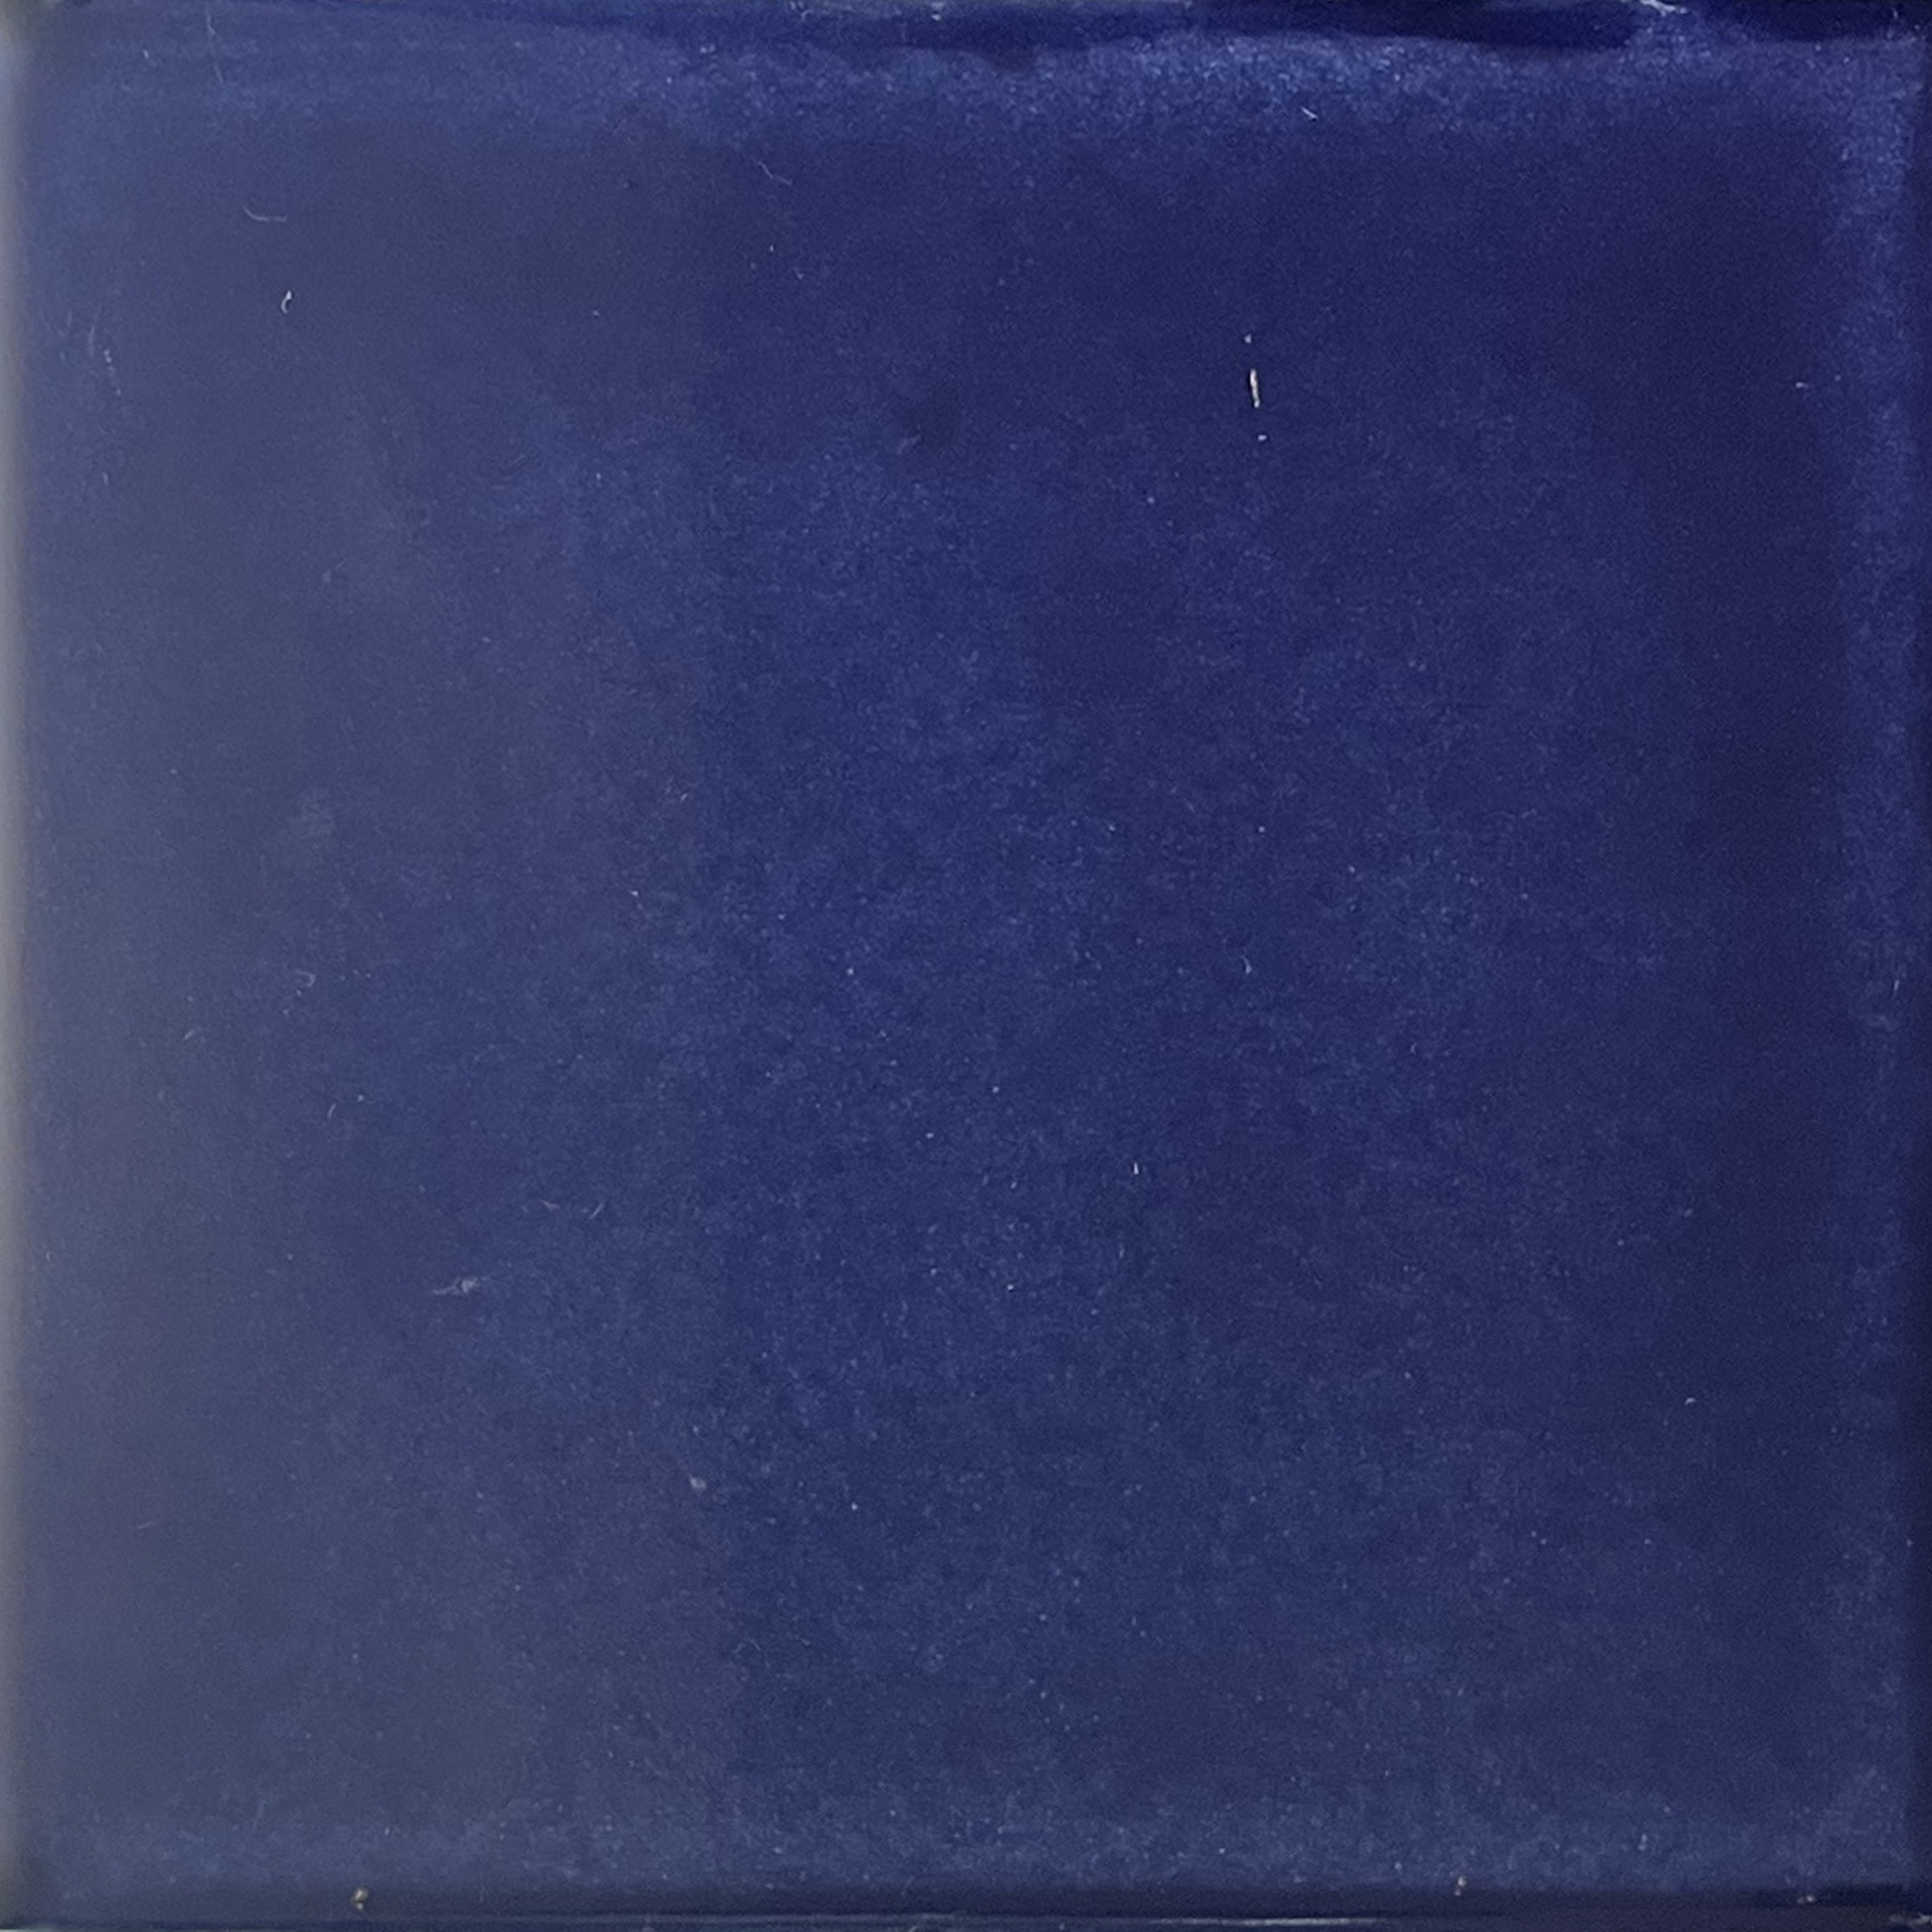 TalaMex Cobalt Blue Talavera Mexican Tile